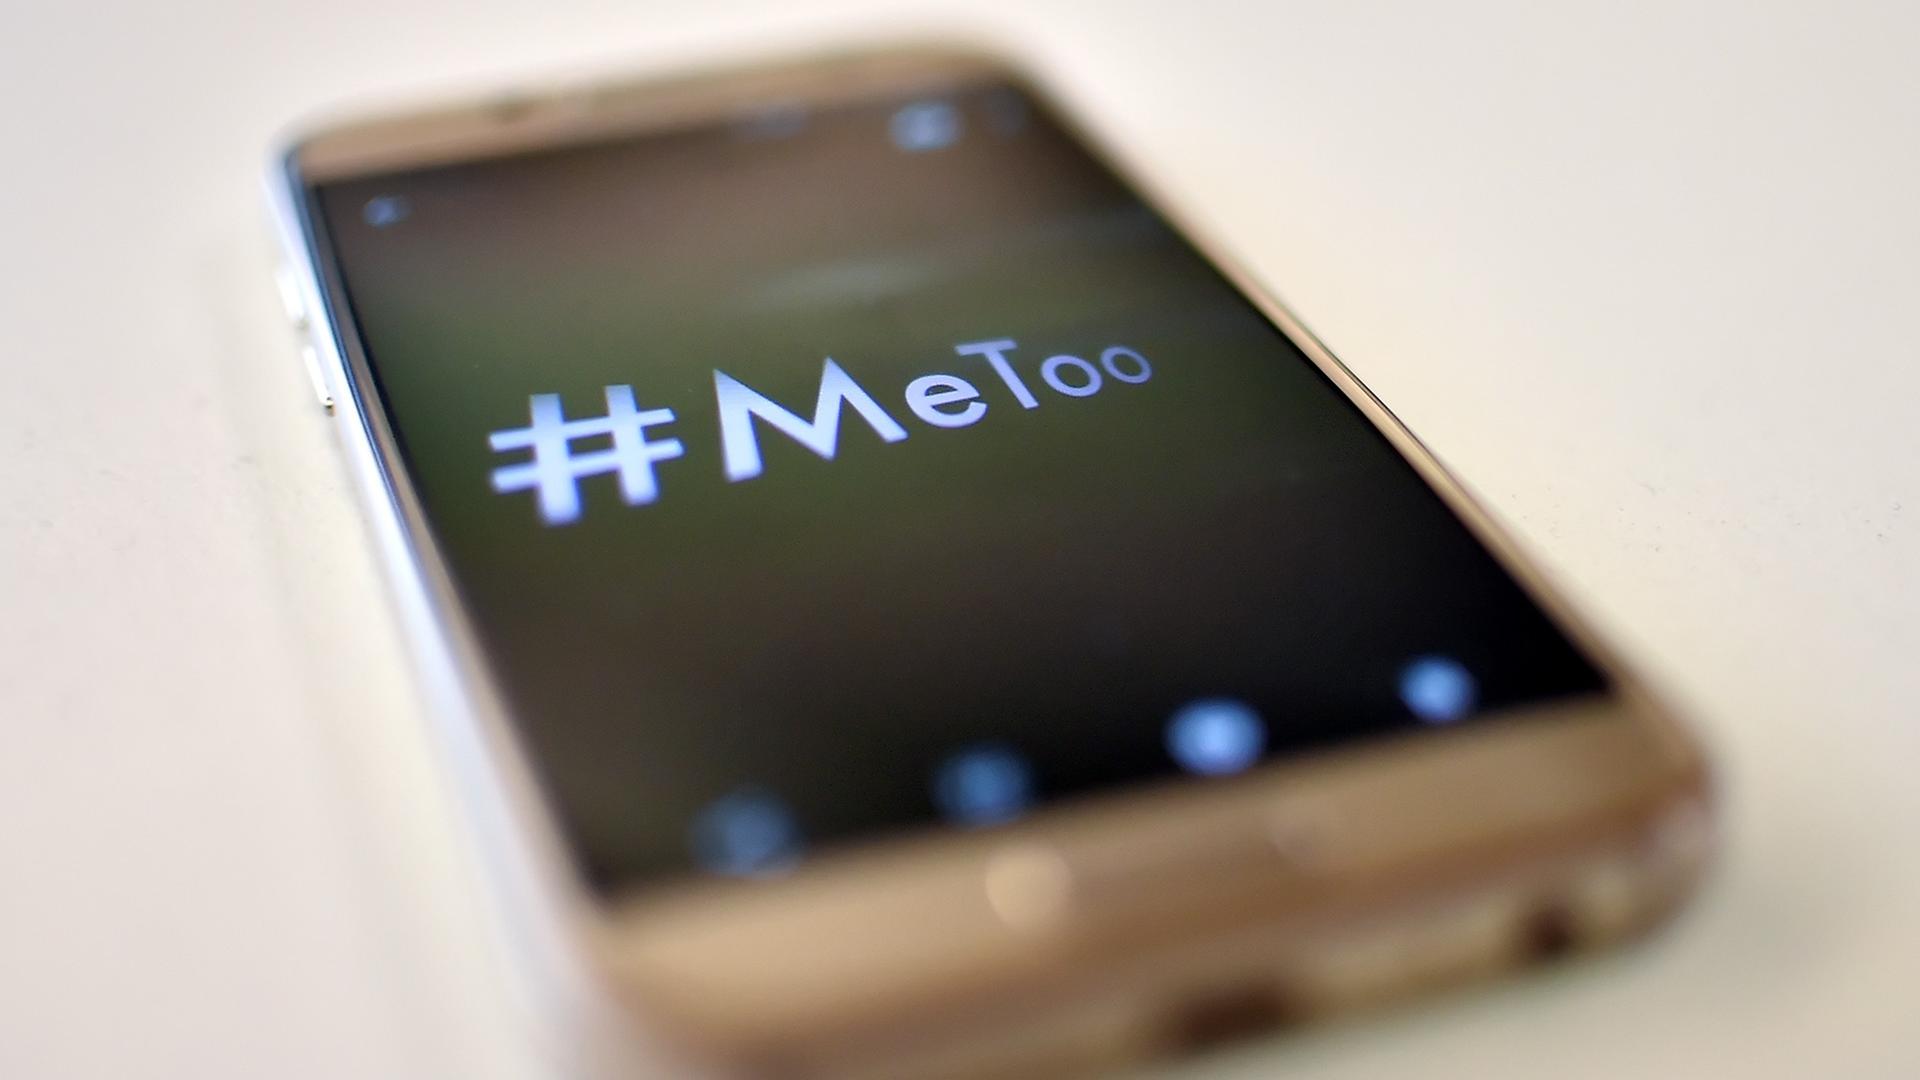 Ein Smartphone mit dem Hashtag "#MeToo"